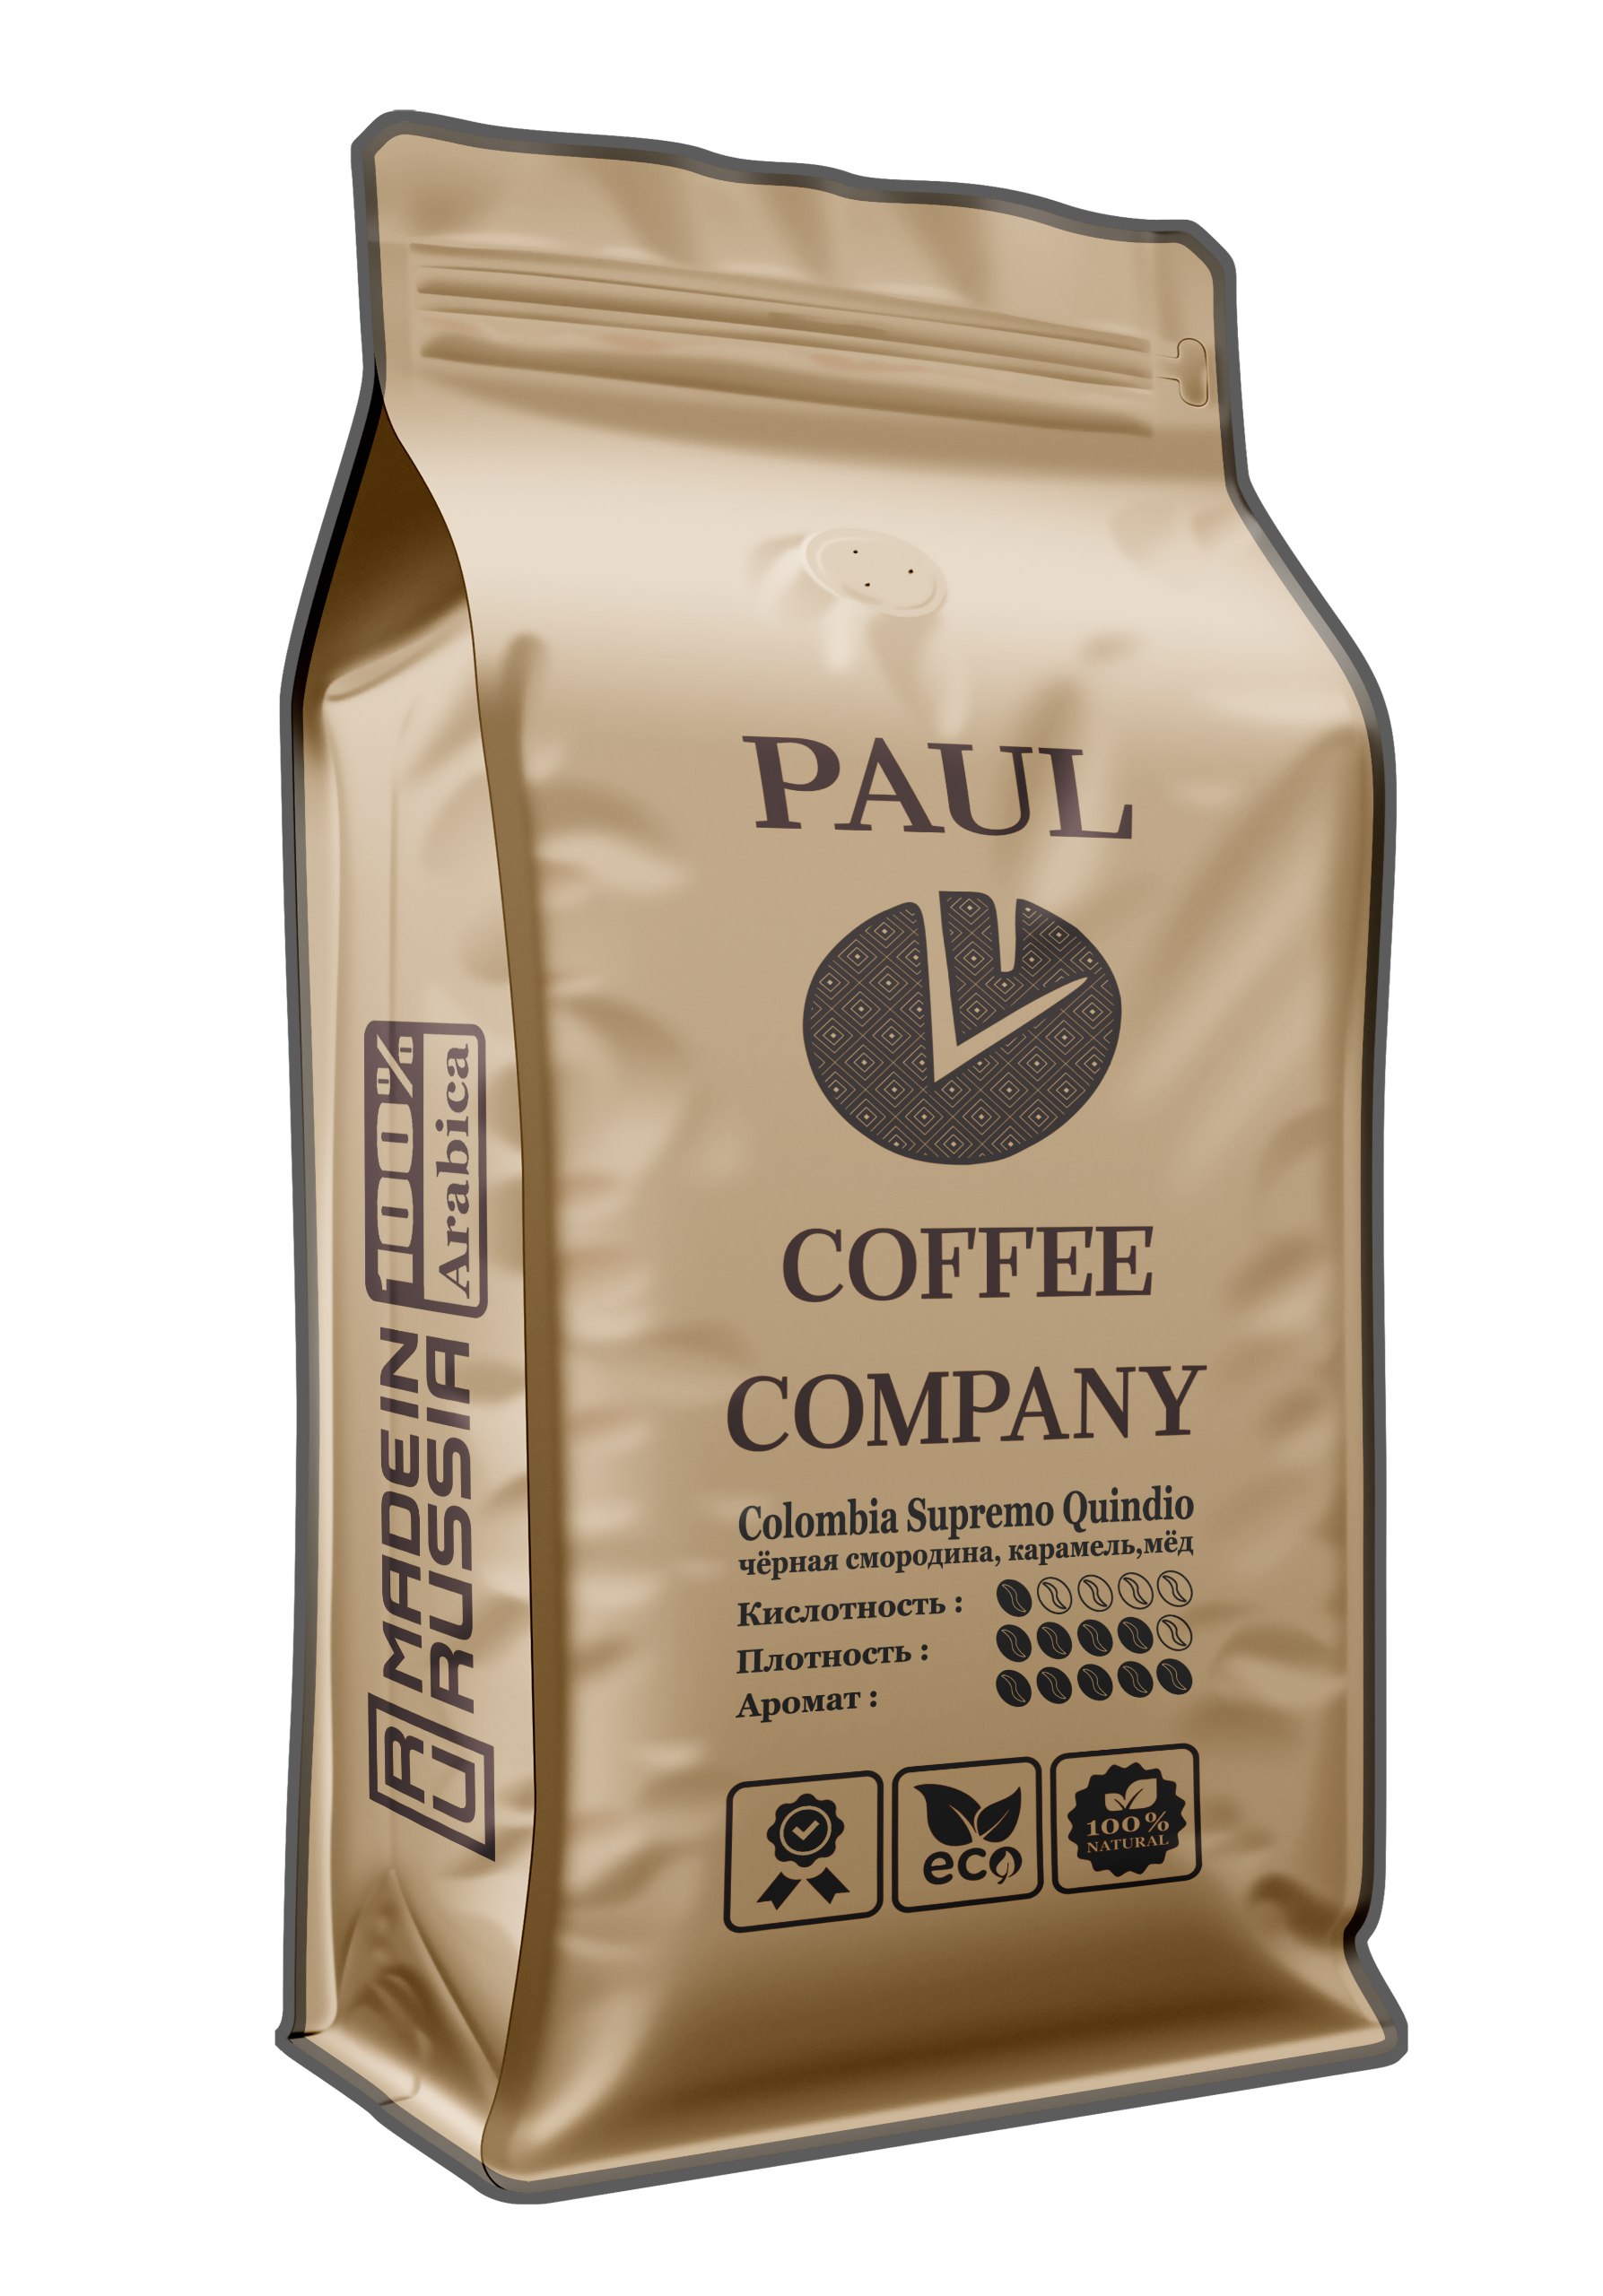 Кофе молотый Paul Coffee Company Колумбия Супремо Киндио Арабика 100%, 250гр